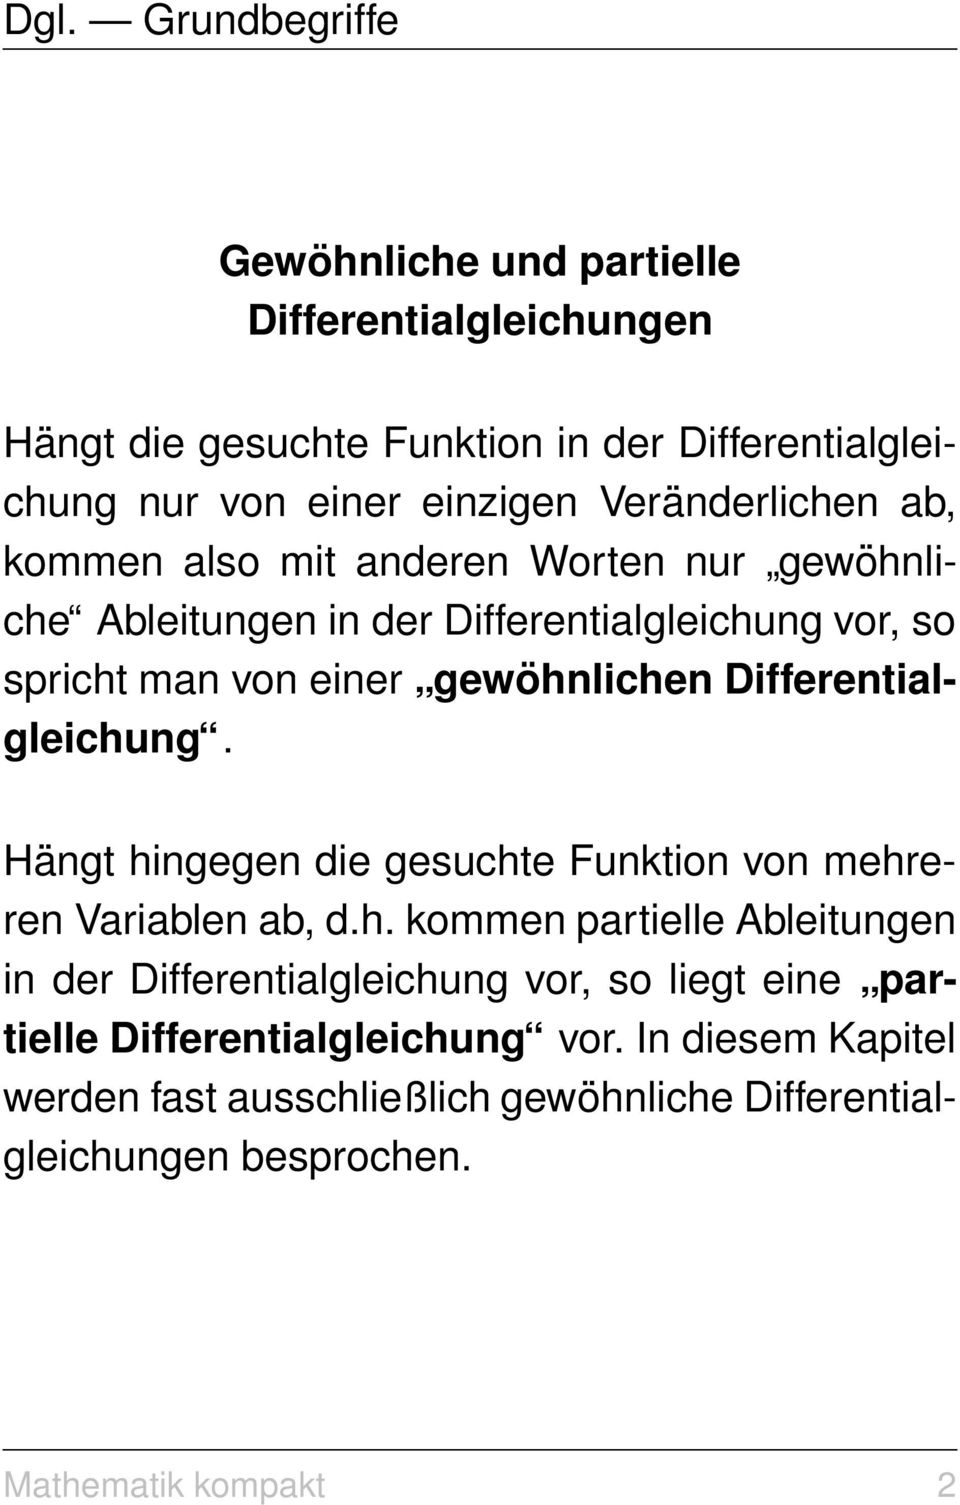 Differentialgleichung. Hängt hingegen die gesuchte Funktion von mehreren Variablen ab, d.h. kommen partielle Ableitungen in der Differentialgleichung vor, so liegt eine partielle Differentialgleichung vor.